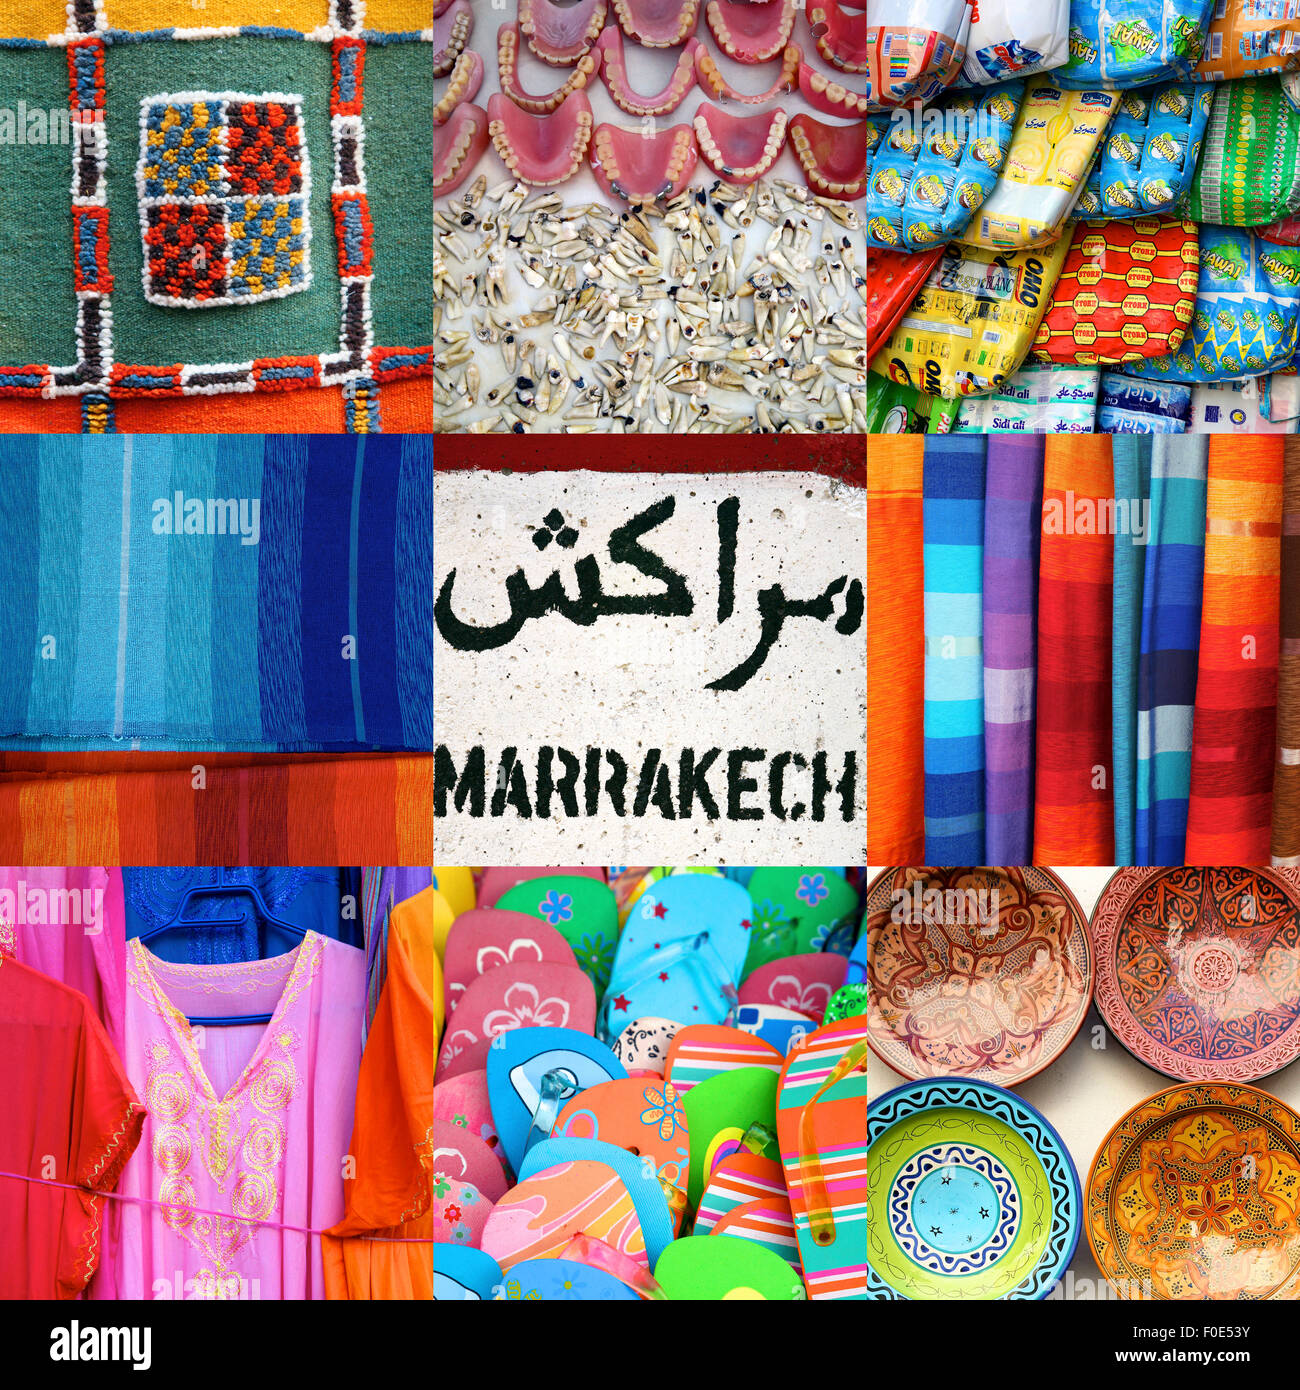 Composizione di 9 immagini in un formato quadrato compreso close-up di prodotti trovati nella vecchia medina o souk di Marrakech Foto Stock